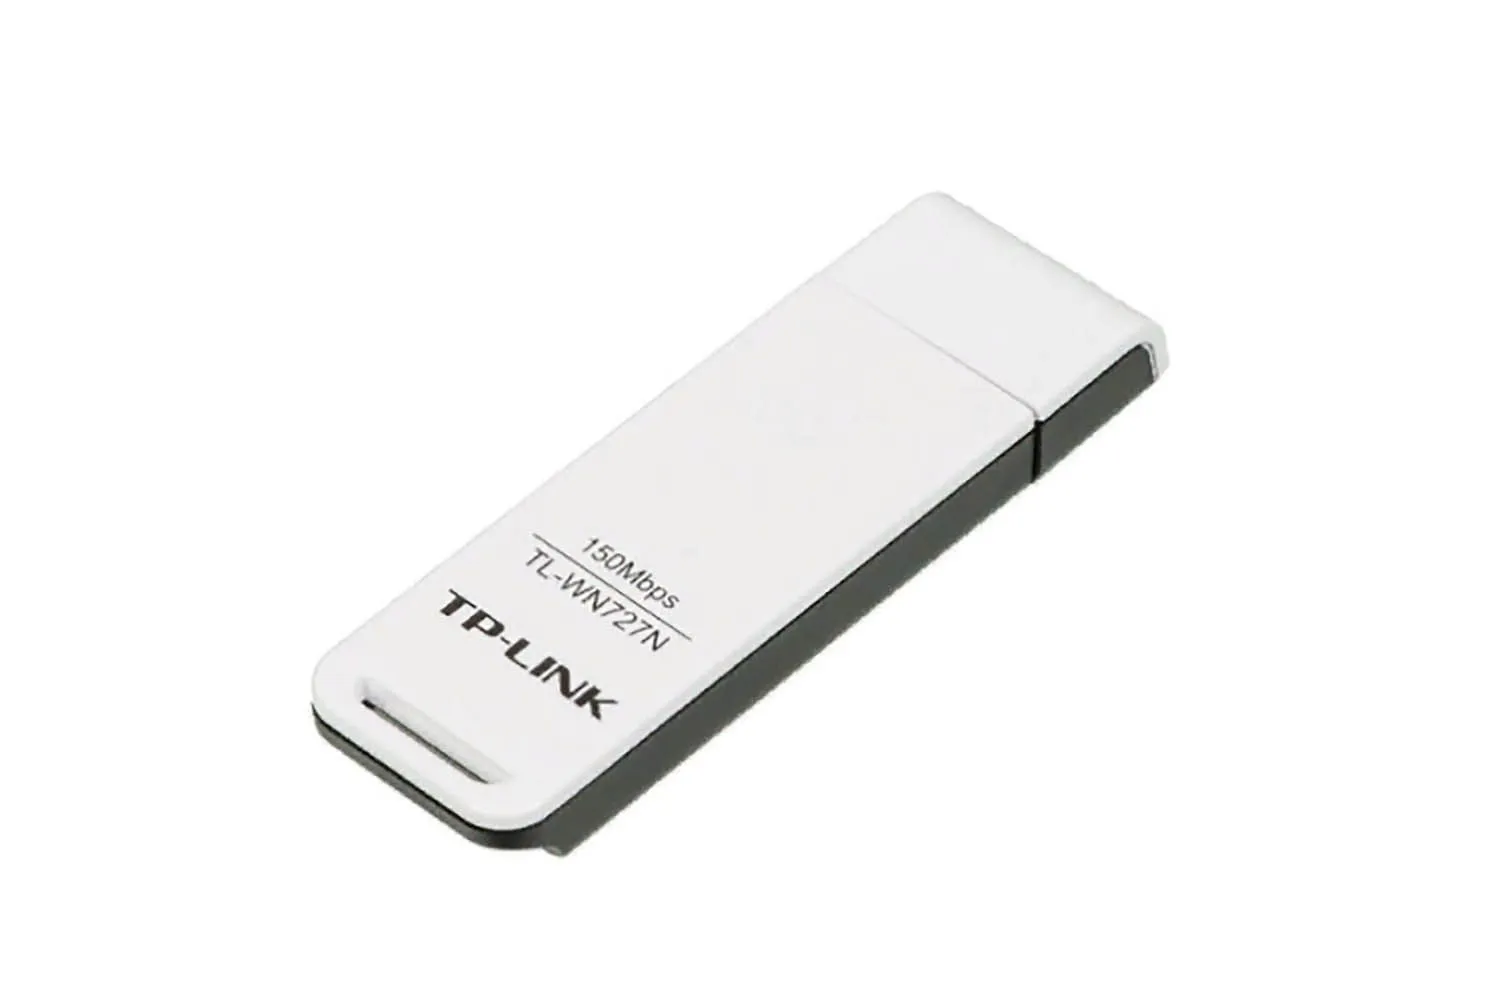 Сетевой адаптер WiFi TP-Link TL-WN727N N150 USB 2.0 (ант.внутр.)